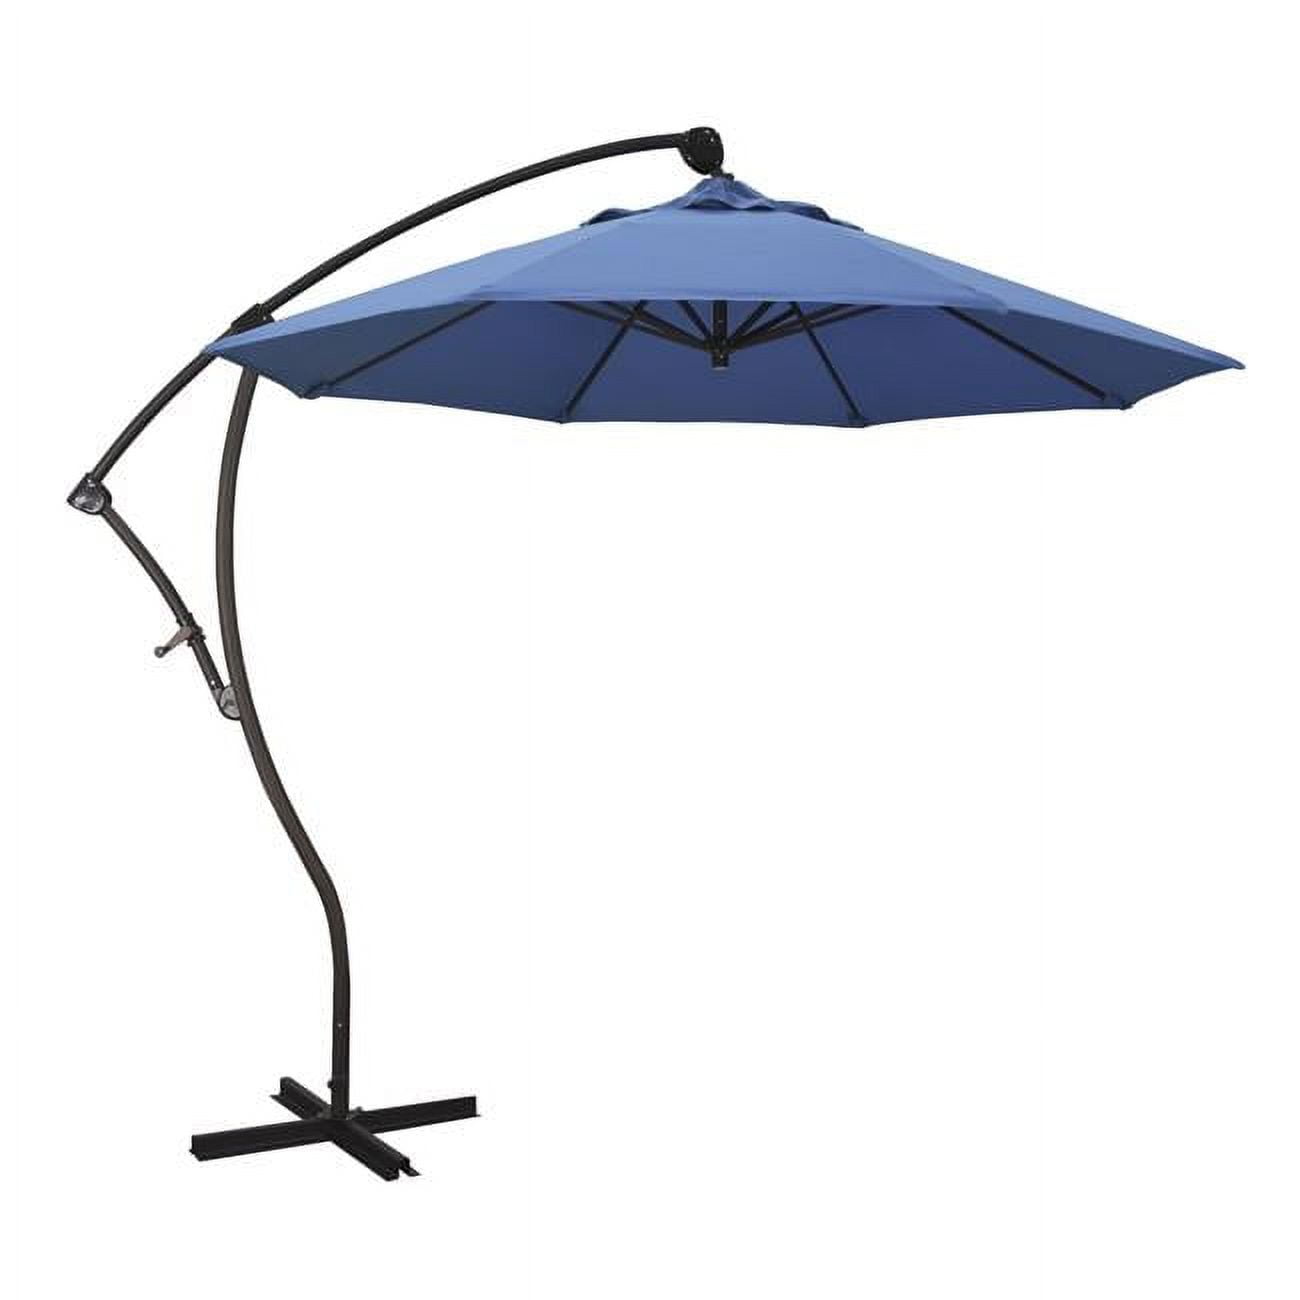 Ba908117-sa26 Bayside Bronze Market Umbrella, Capri - 9 Ft. X 8 Ribs